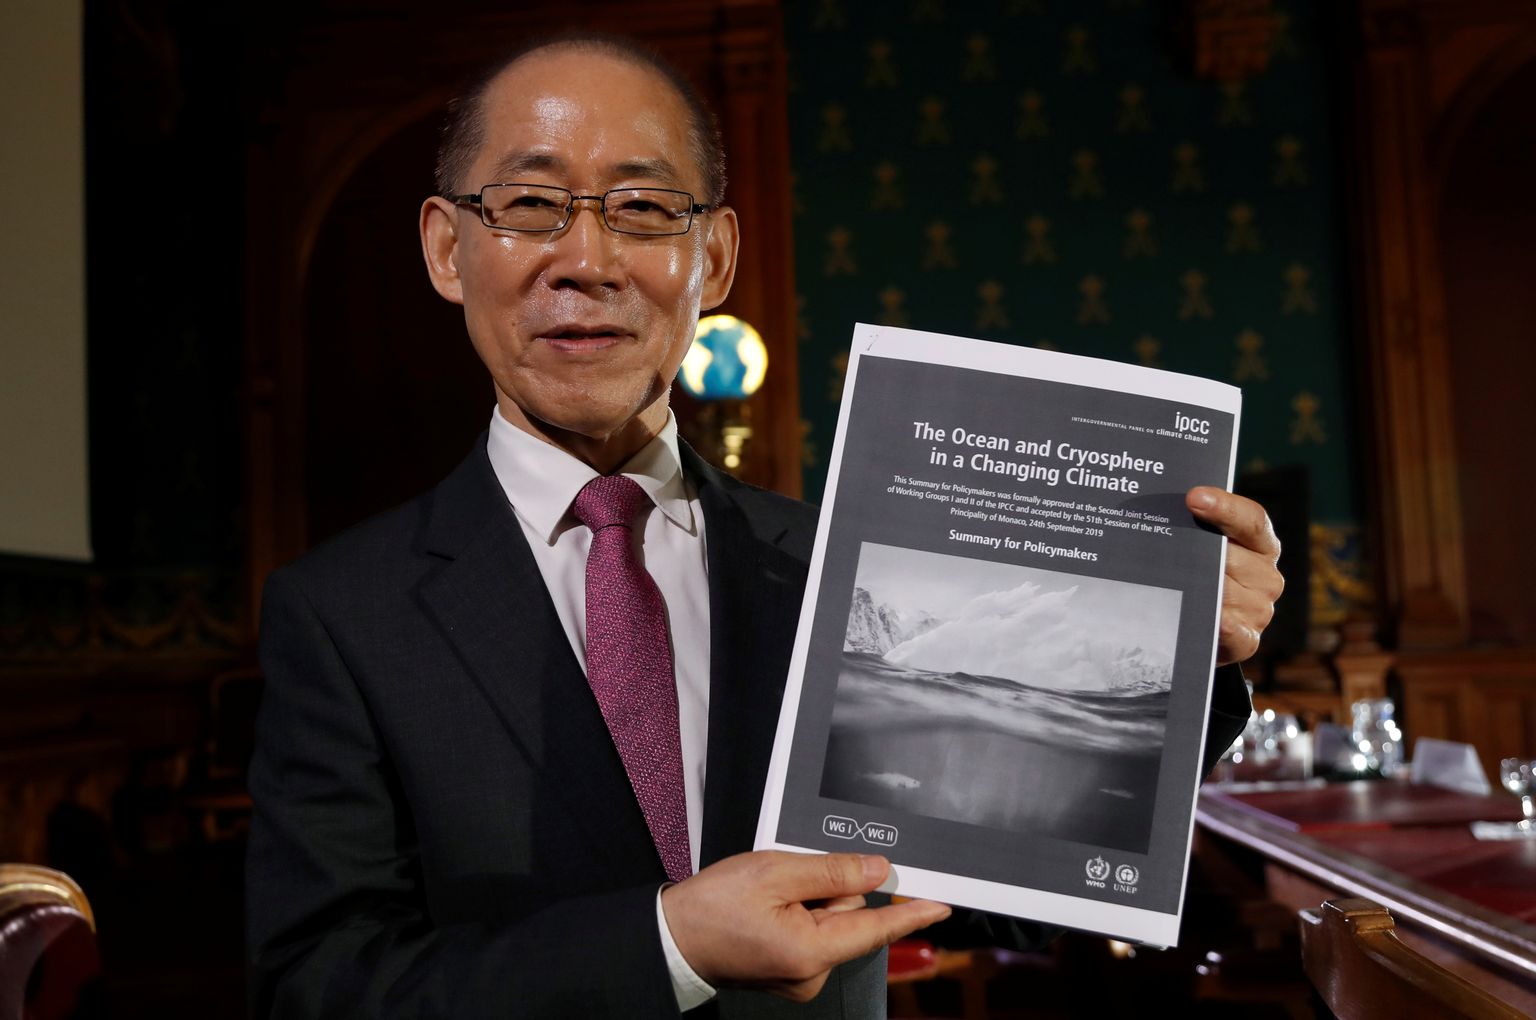 Valitsustevahelise Kliimamuutuse Nõukogu (IPCC) esimees Hoesung Lee kolmapäeval Monacos nõukogu ookeani- ja krüosfääri raportit tutvustamas.